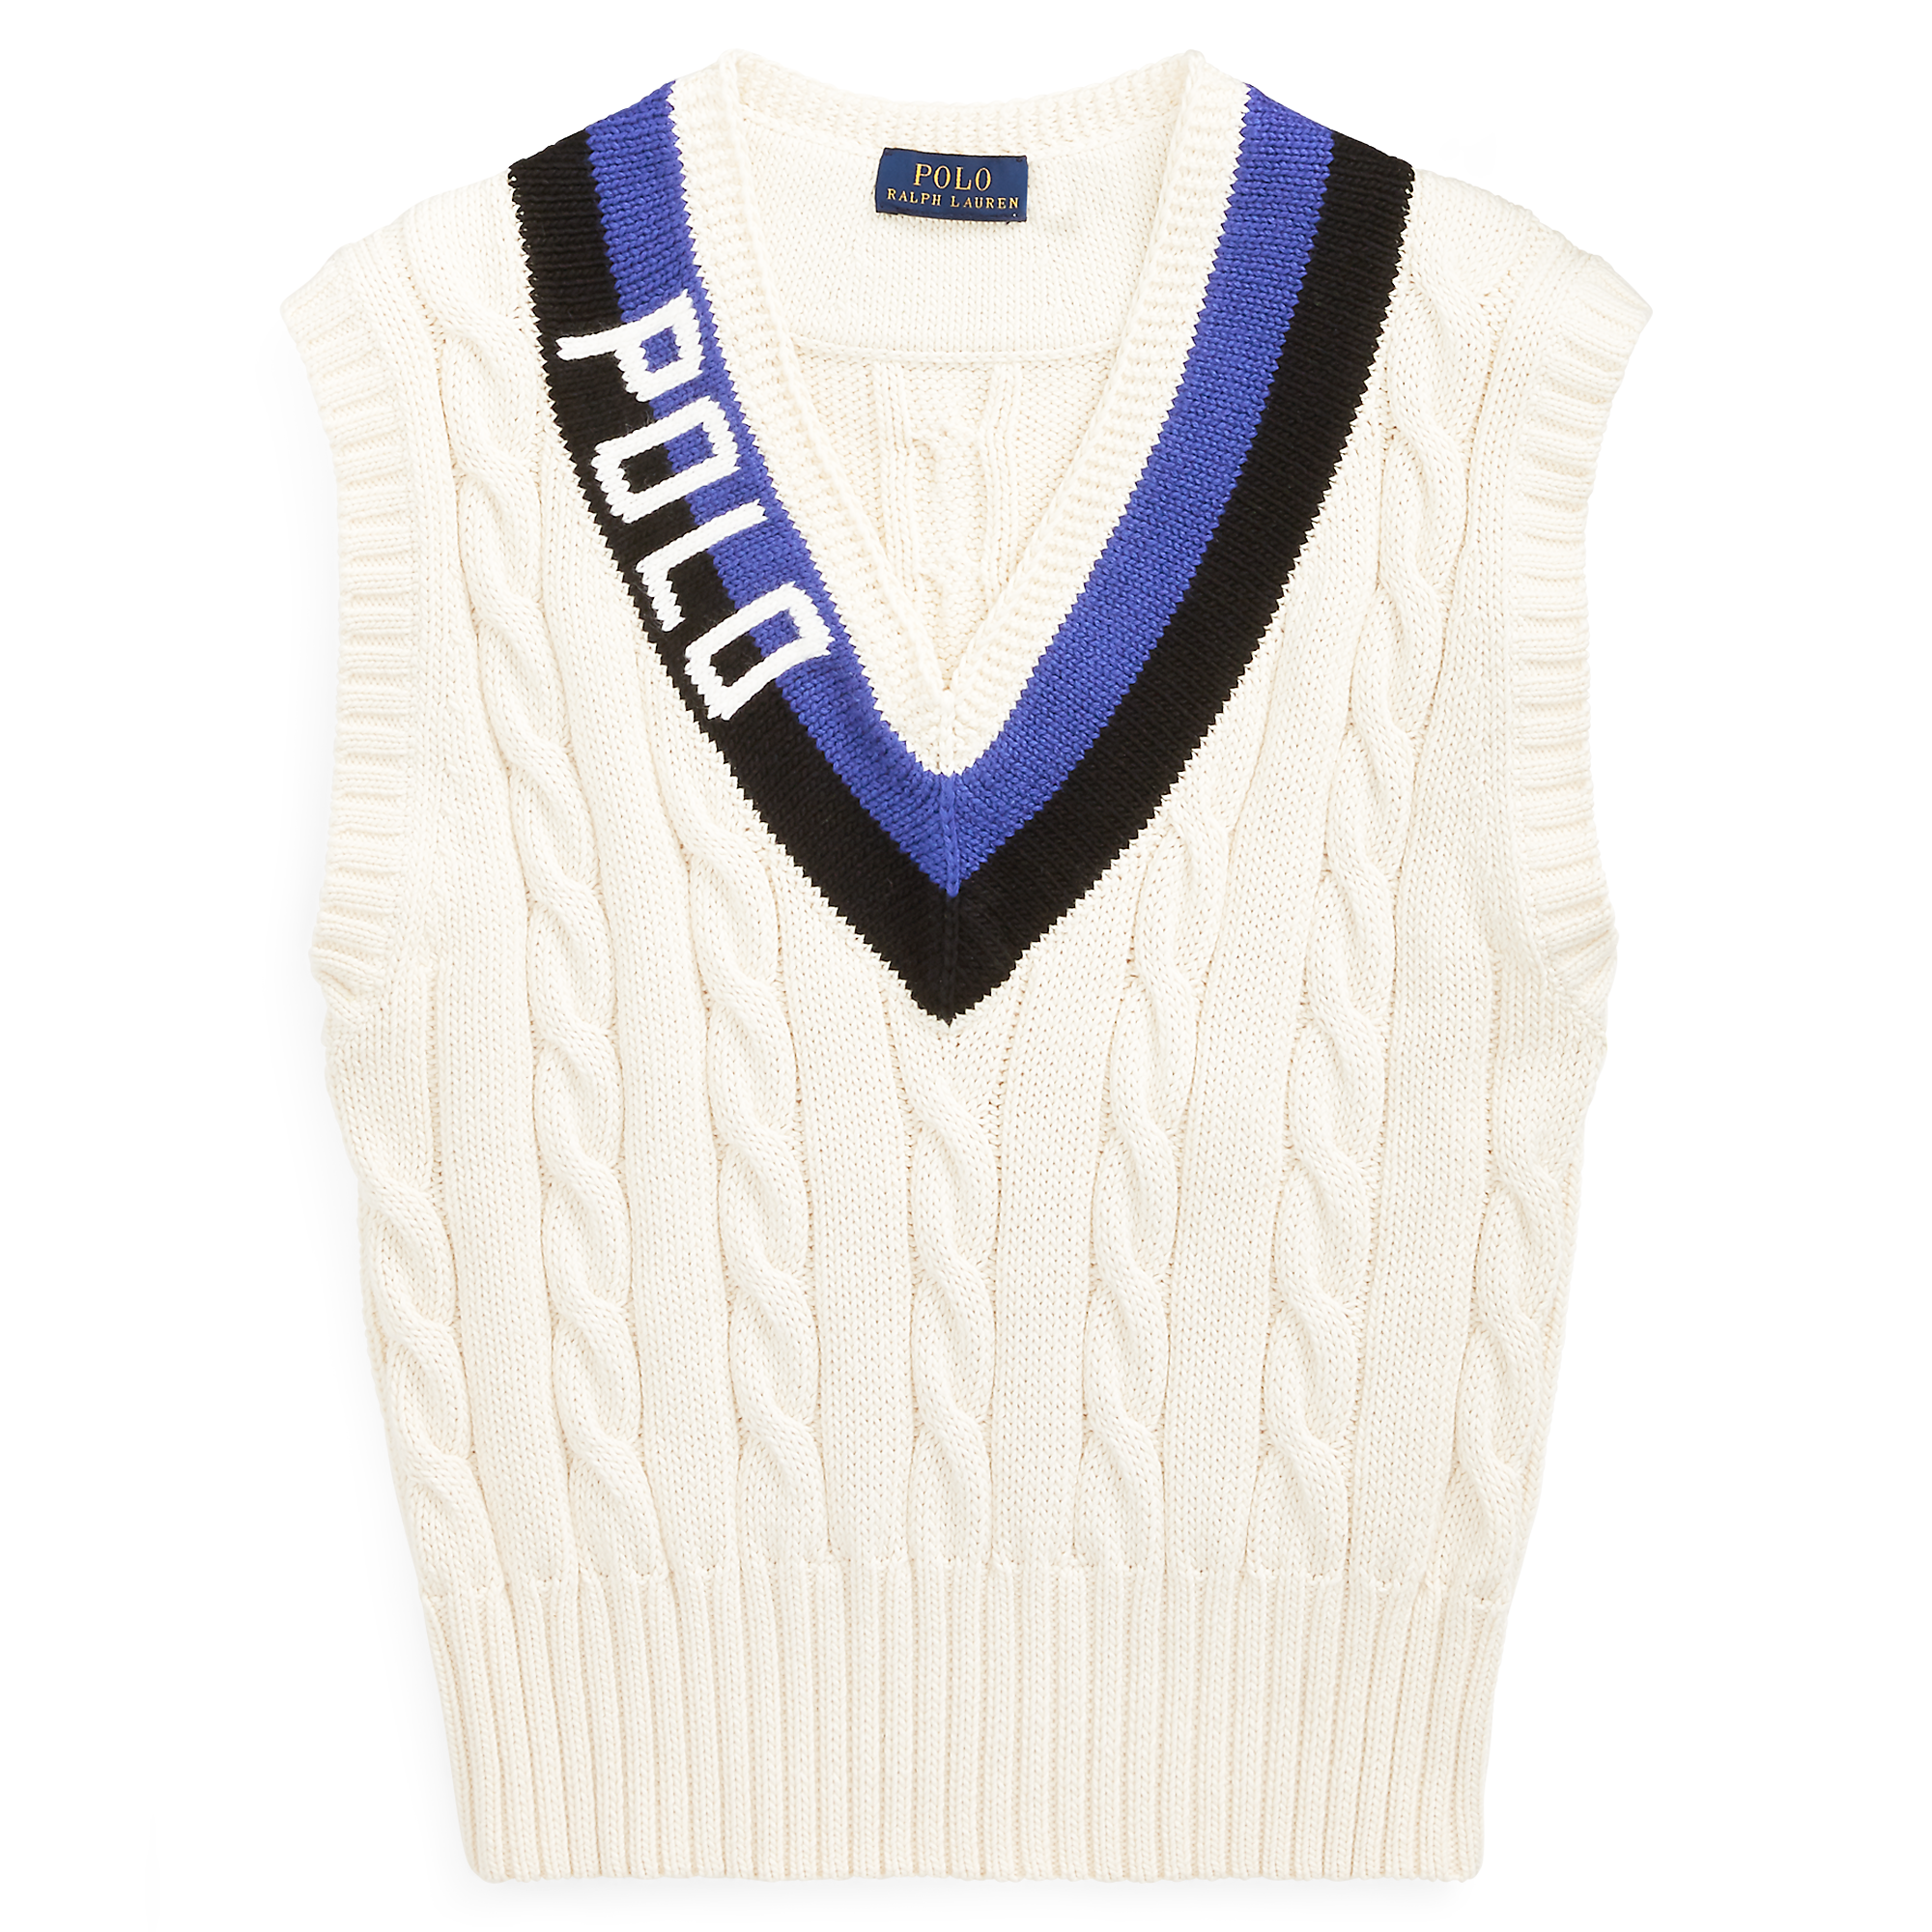 Ralph Lauren Polo Cotton Cricket Vest. 2